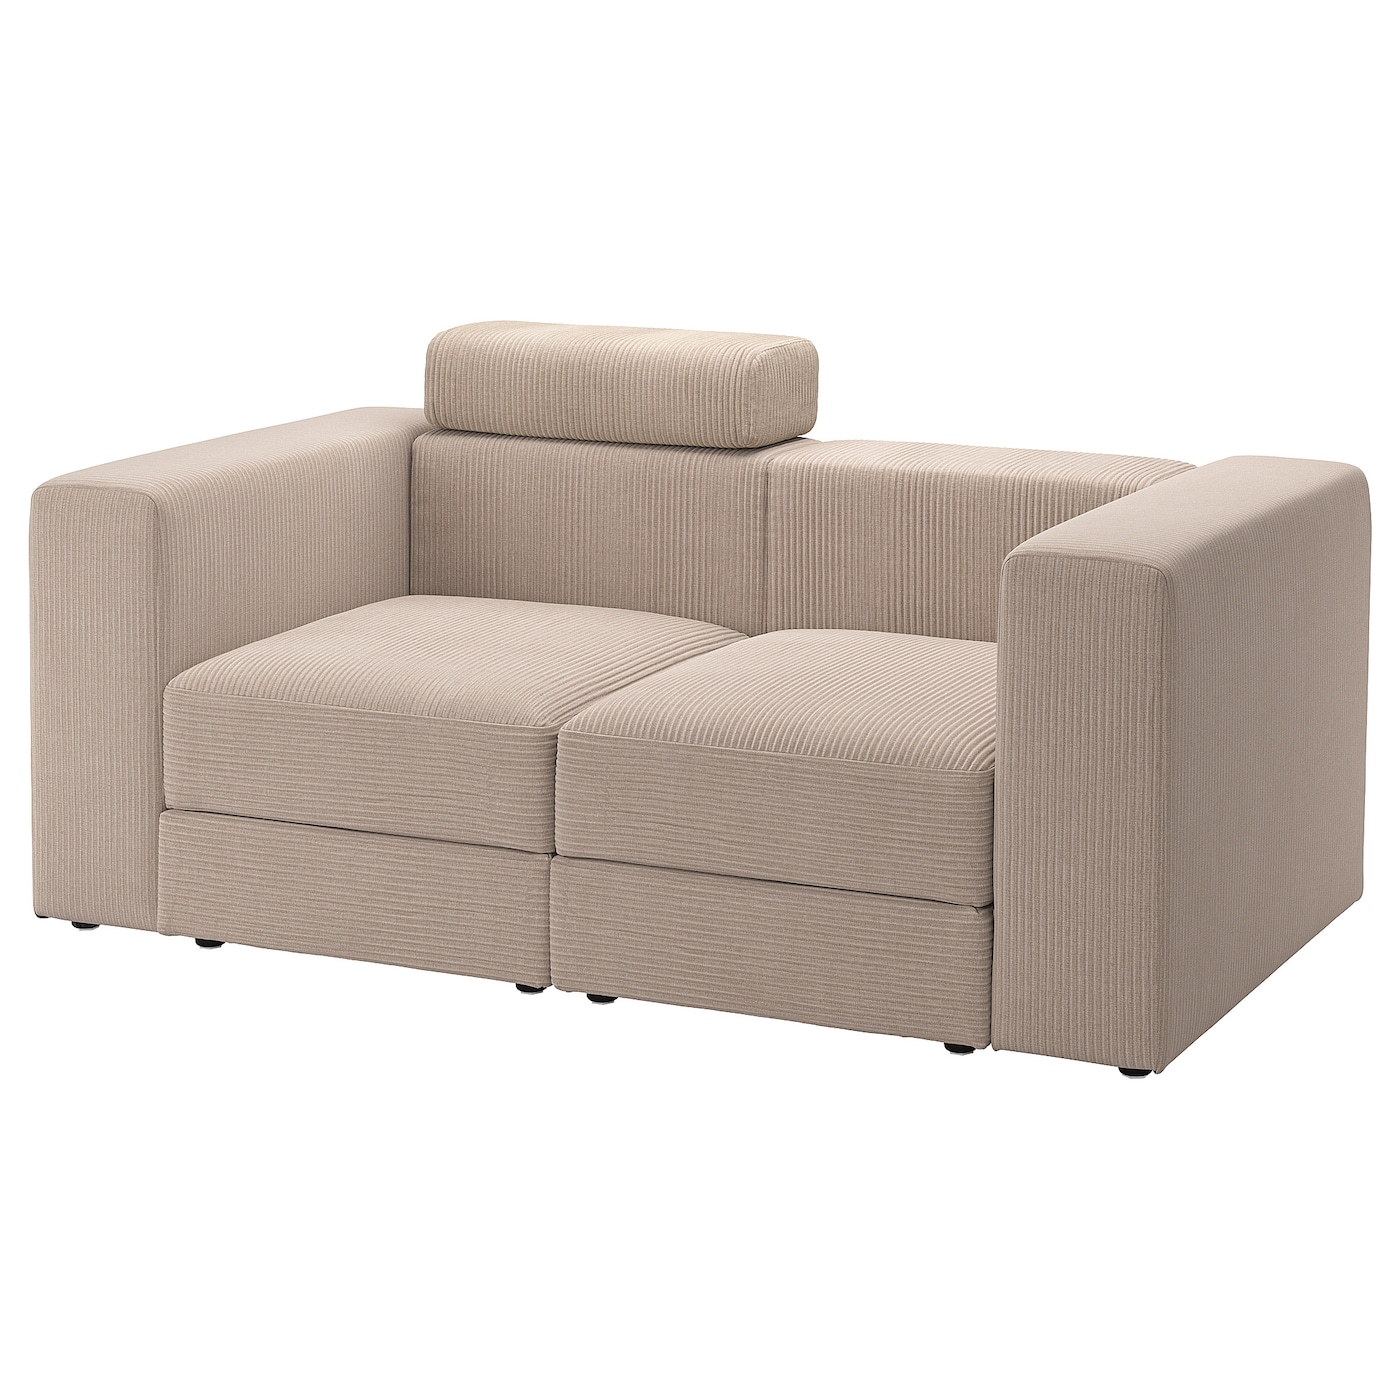 ДЖЭТТЕБО 2 модульный диван, с подголовником/Самсала серый бежевый JÄTTEBO IKEA диван альфа модульный к 2 люкса шоколад